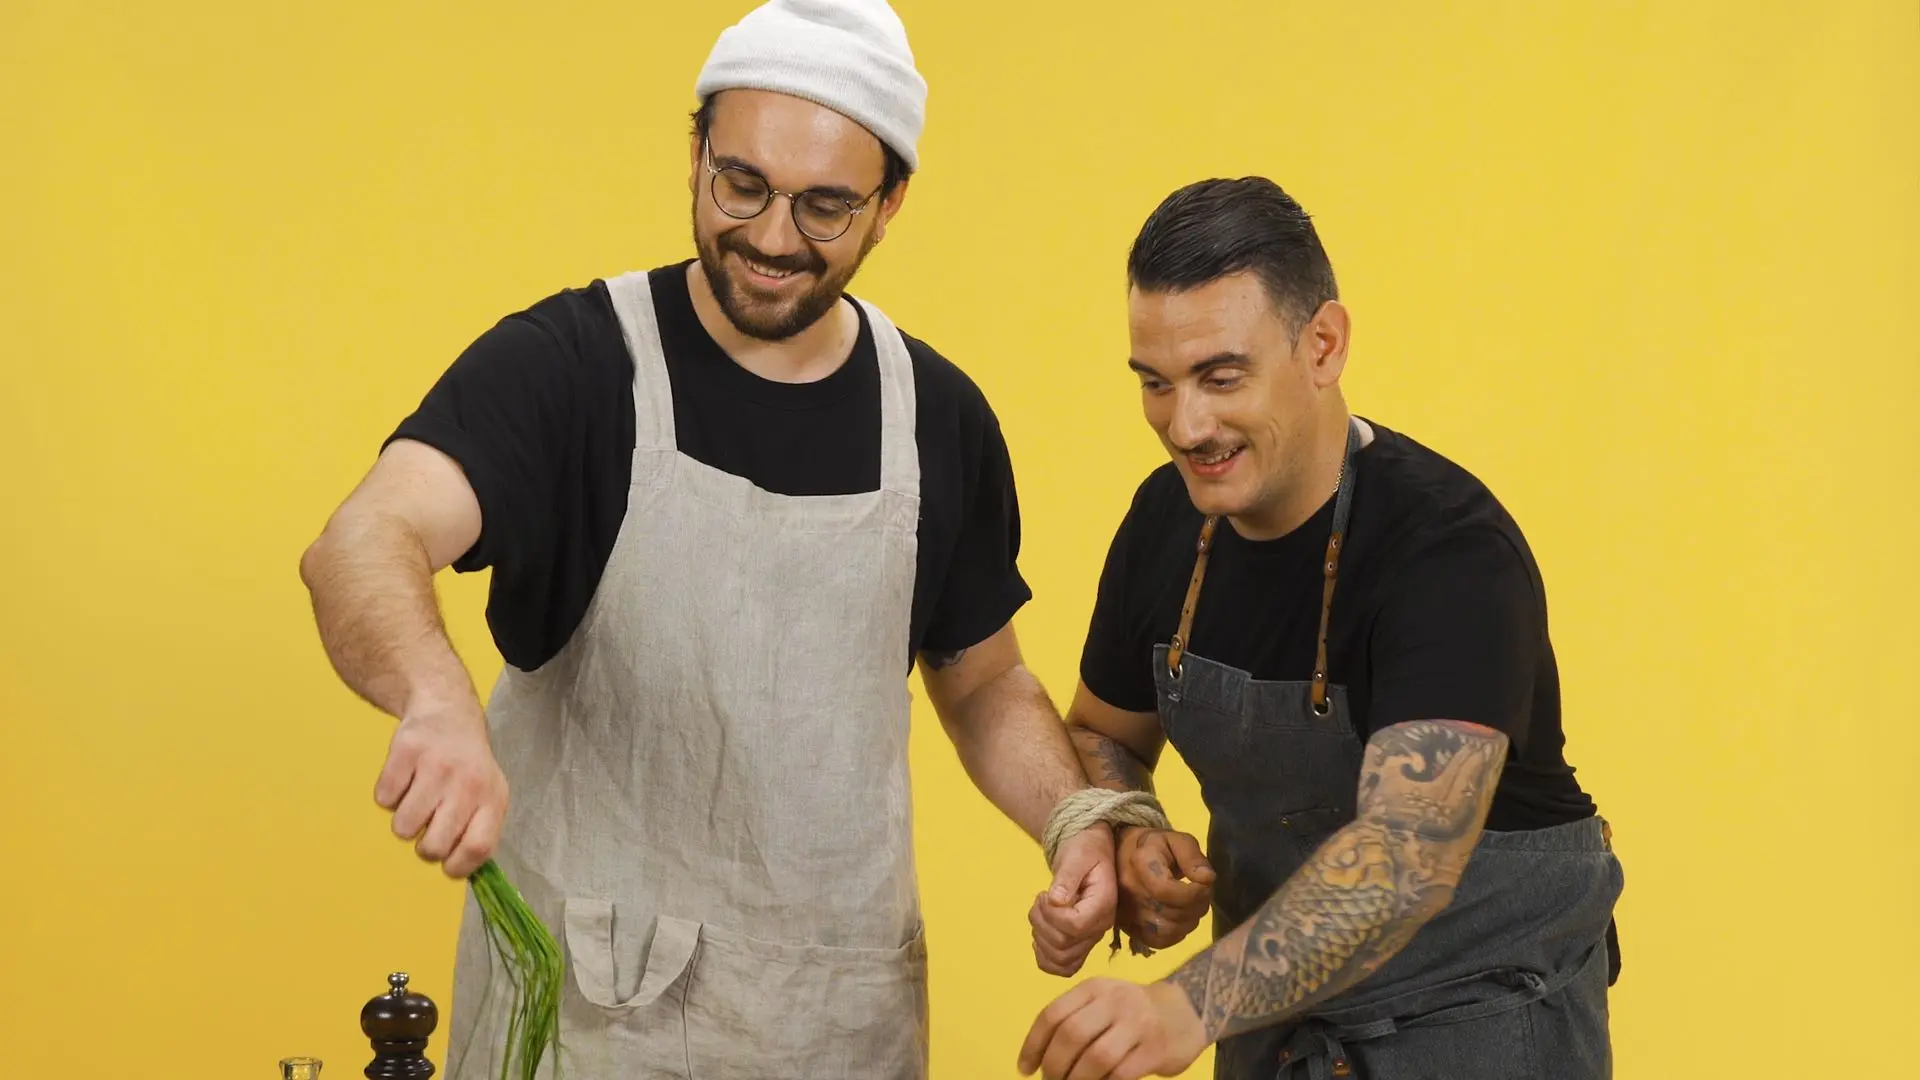 Vidéo : Les recettes serrées : La cuisine crée des liens avec Arnaud Baptiste et Whoogy’s